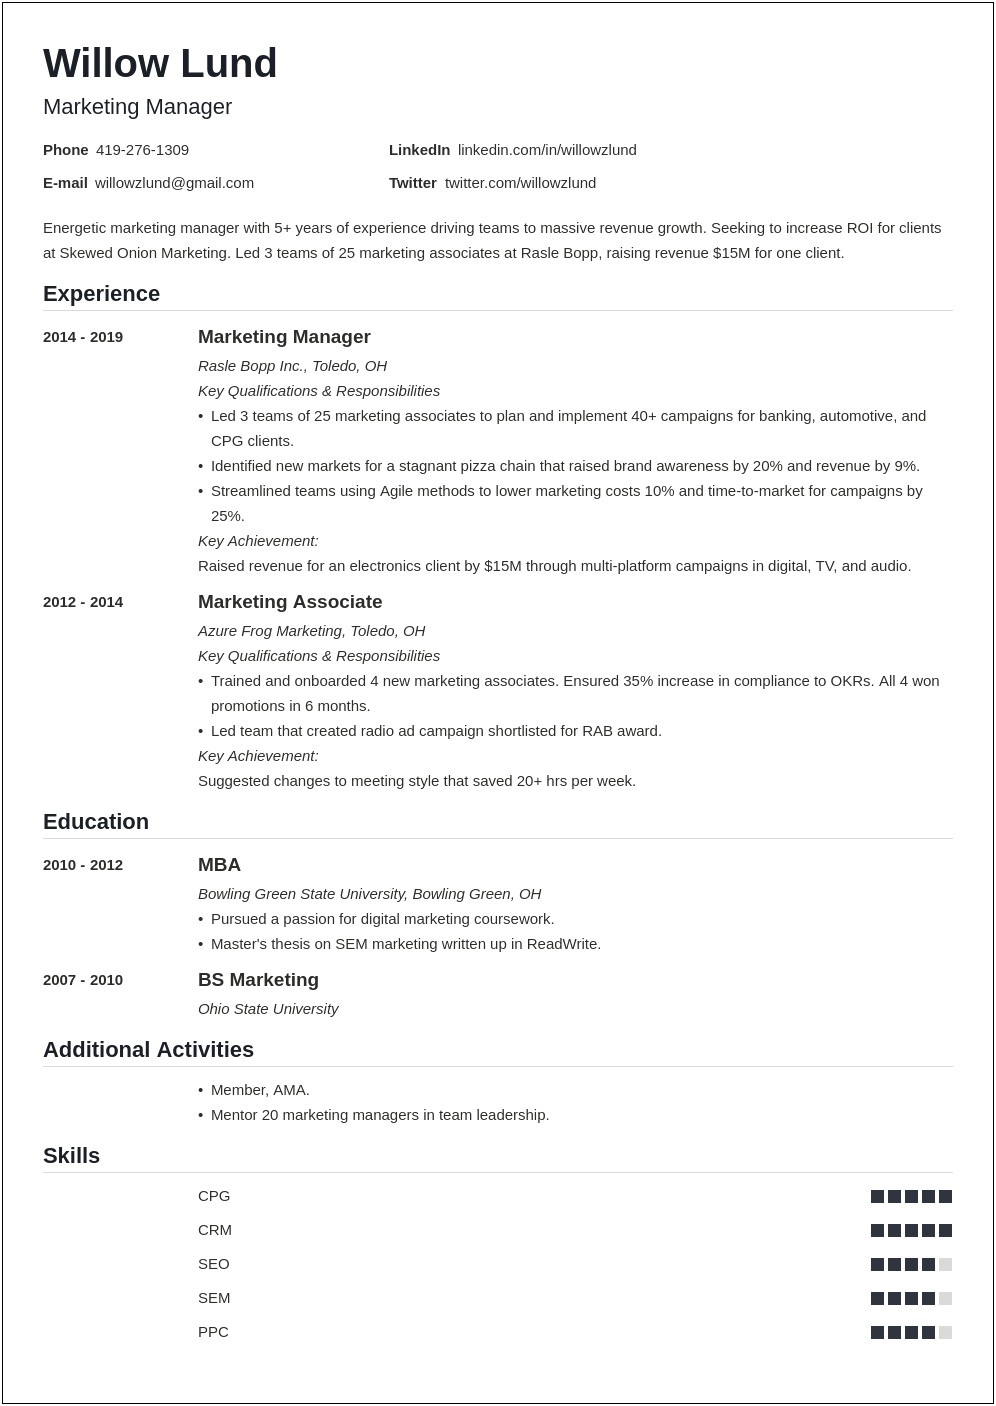 Marketing Manager Job Description Sample Resume